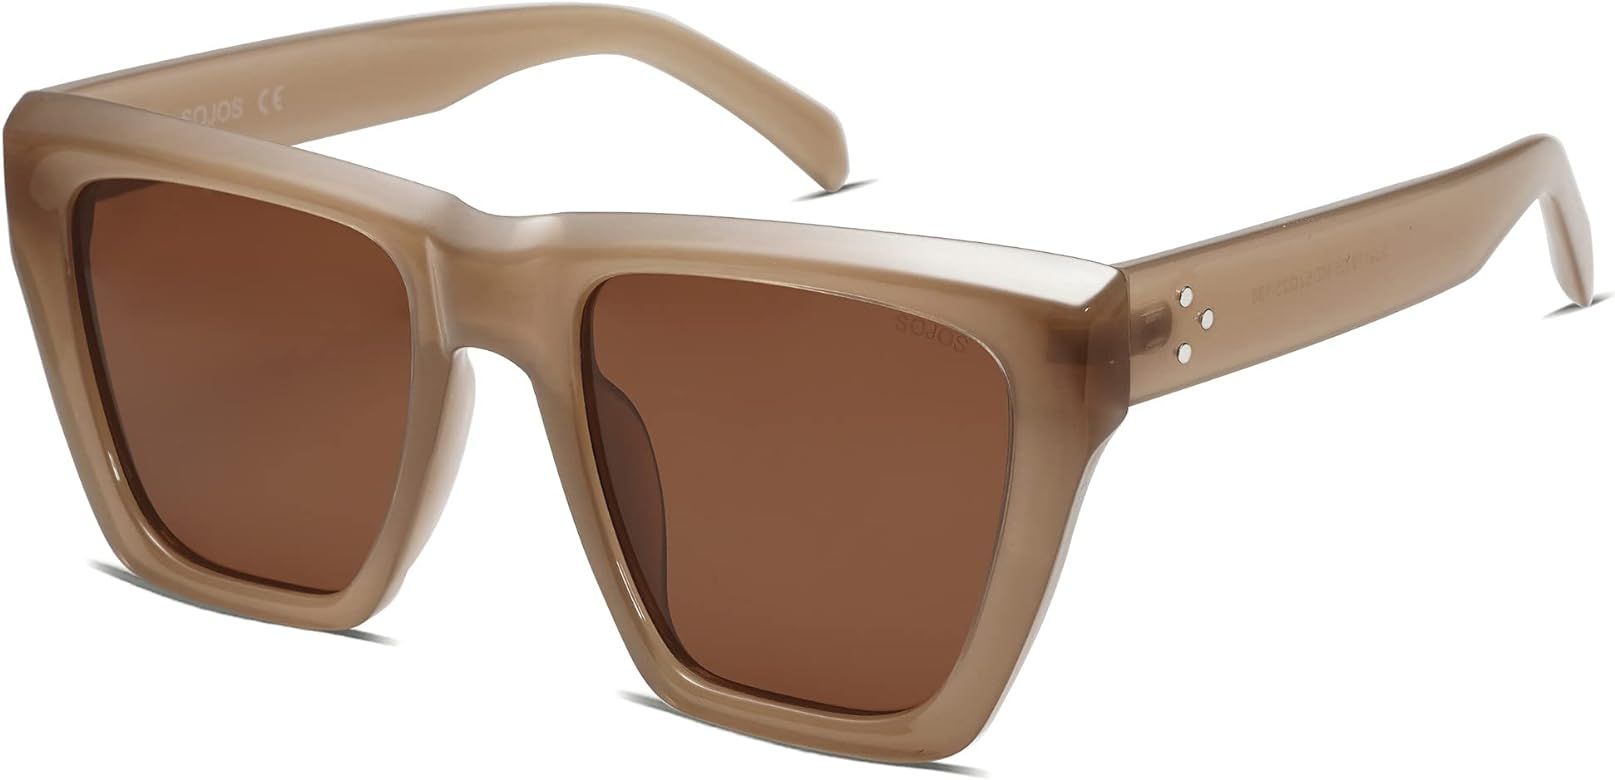 Vintage Oversized Square Cat Eye Polarized Sunglasses for Women Trendy Fashion Cateye Style Sungl... | Amazon (US)